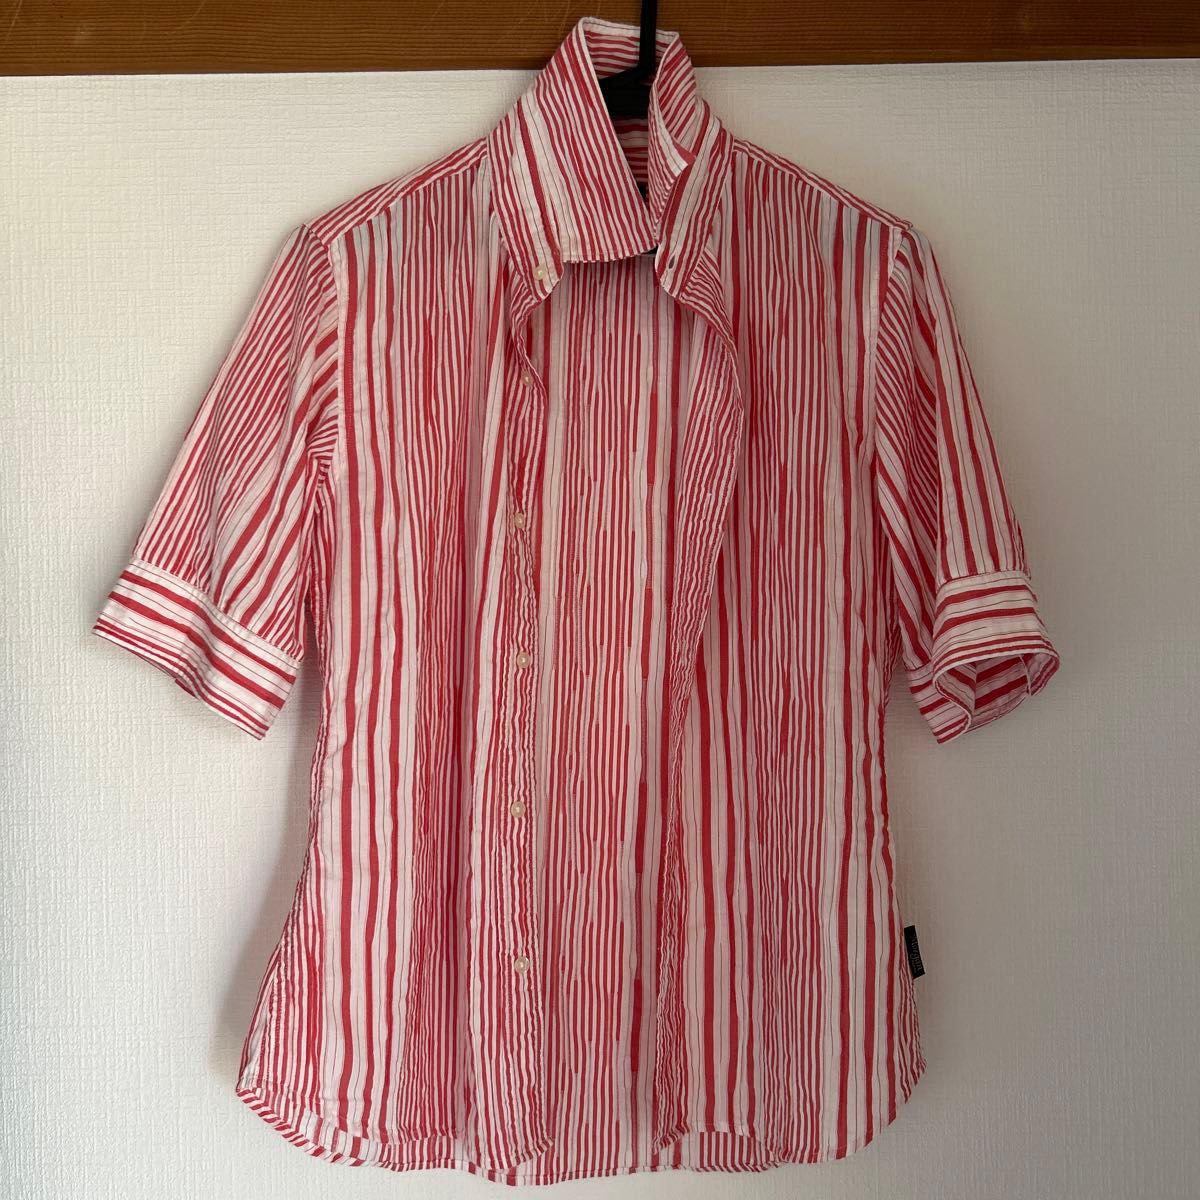 シャーリングシャツ ストライプシャツ 五分袖 ストライプ柄 マルチストライプ MORGANHOMME モルガンオム10周年商品